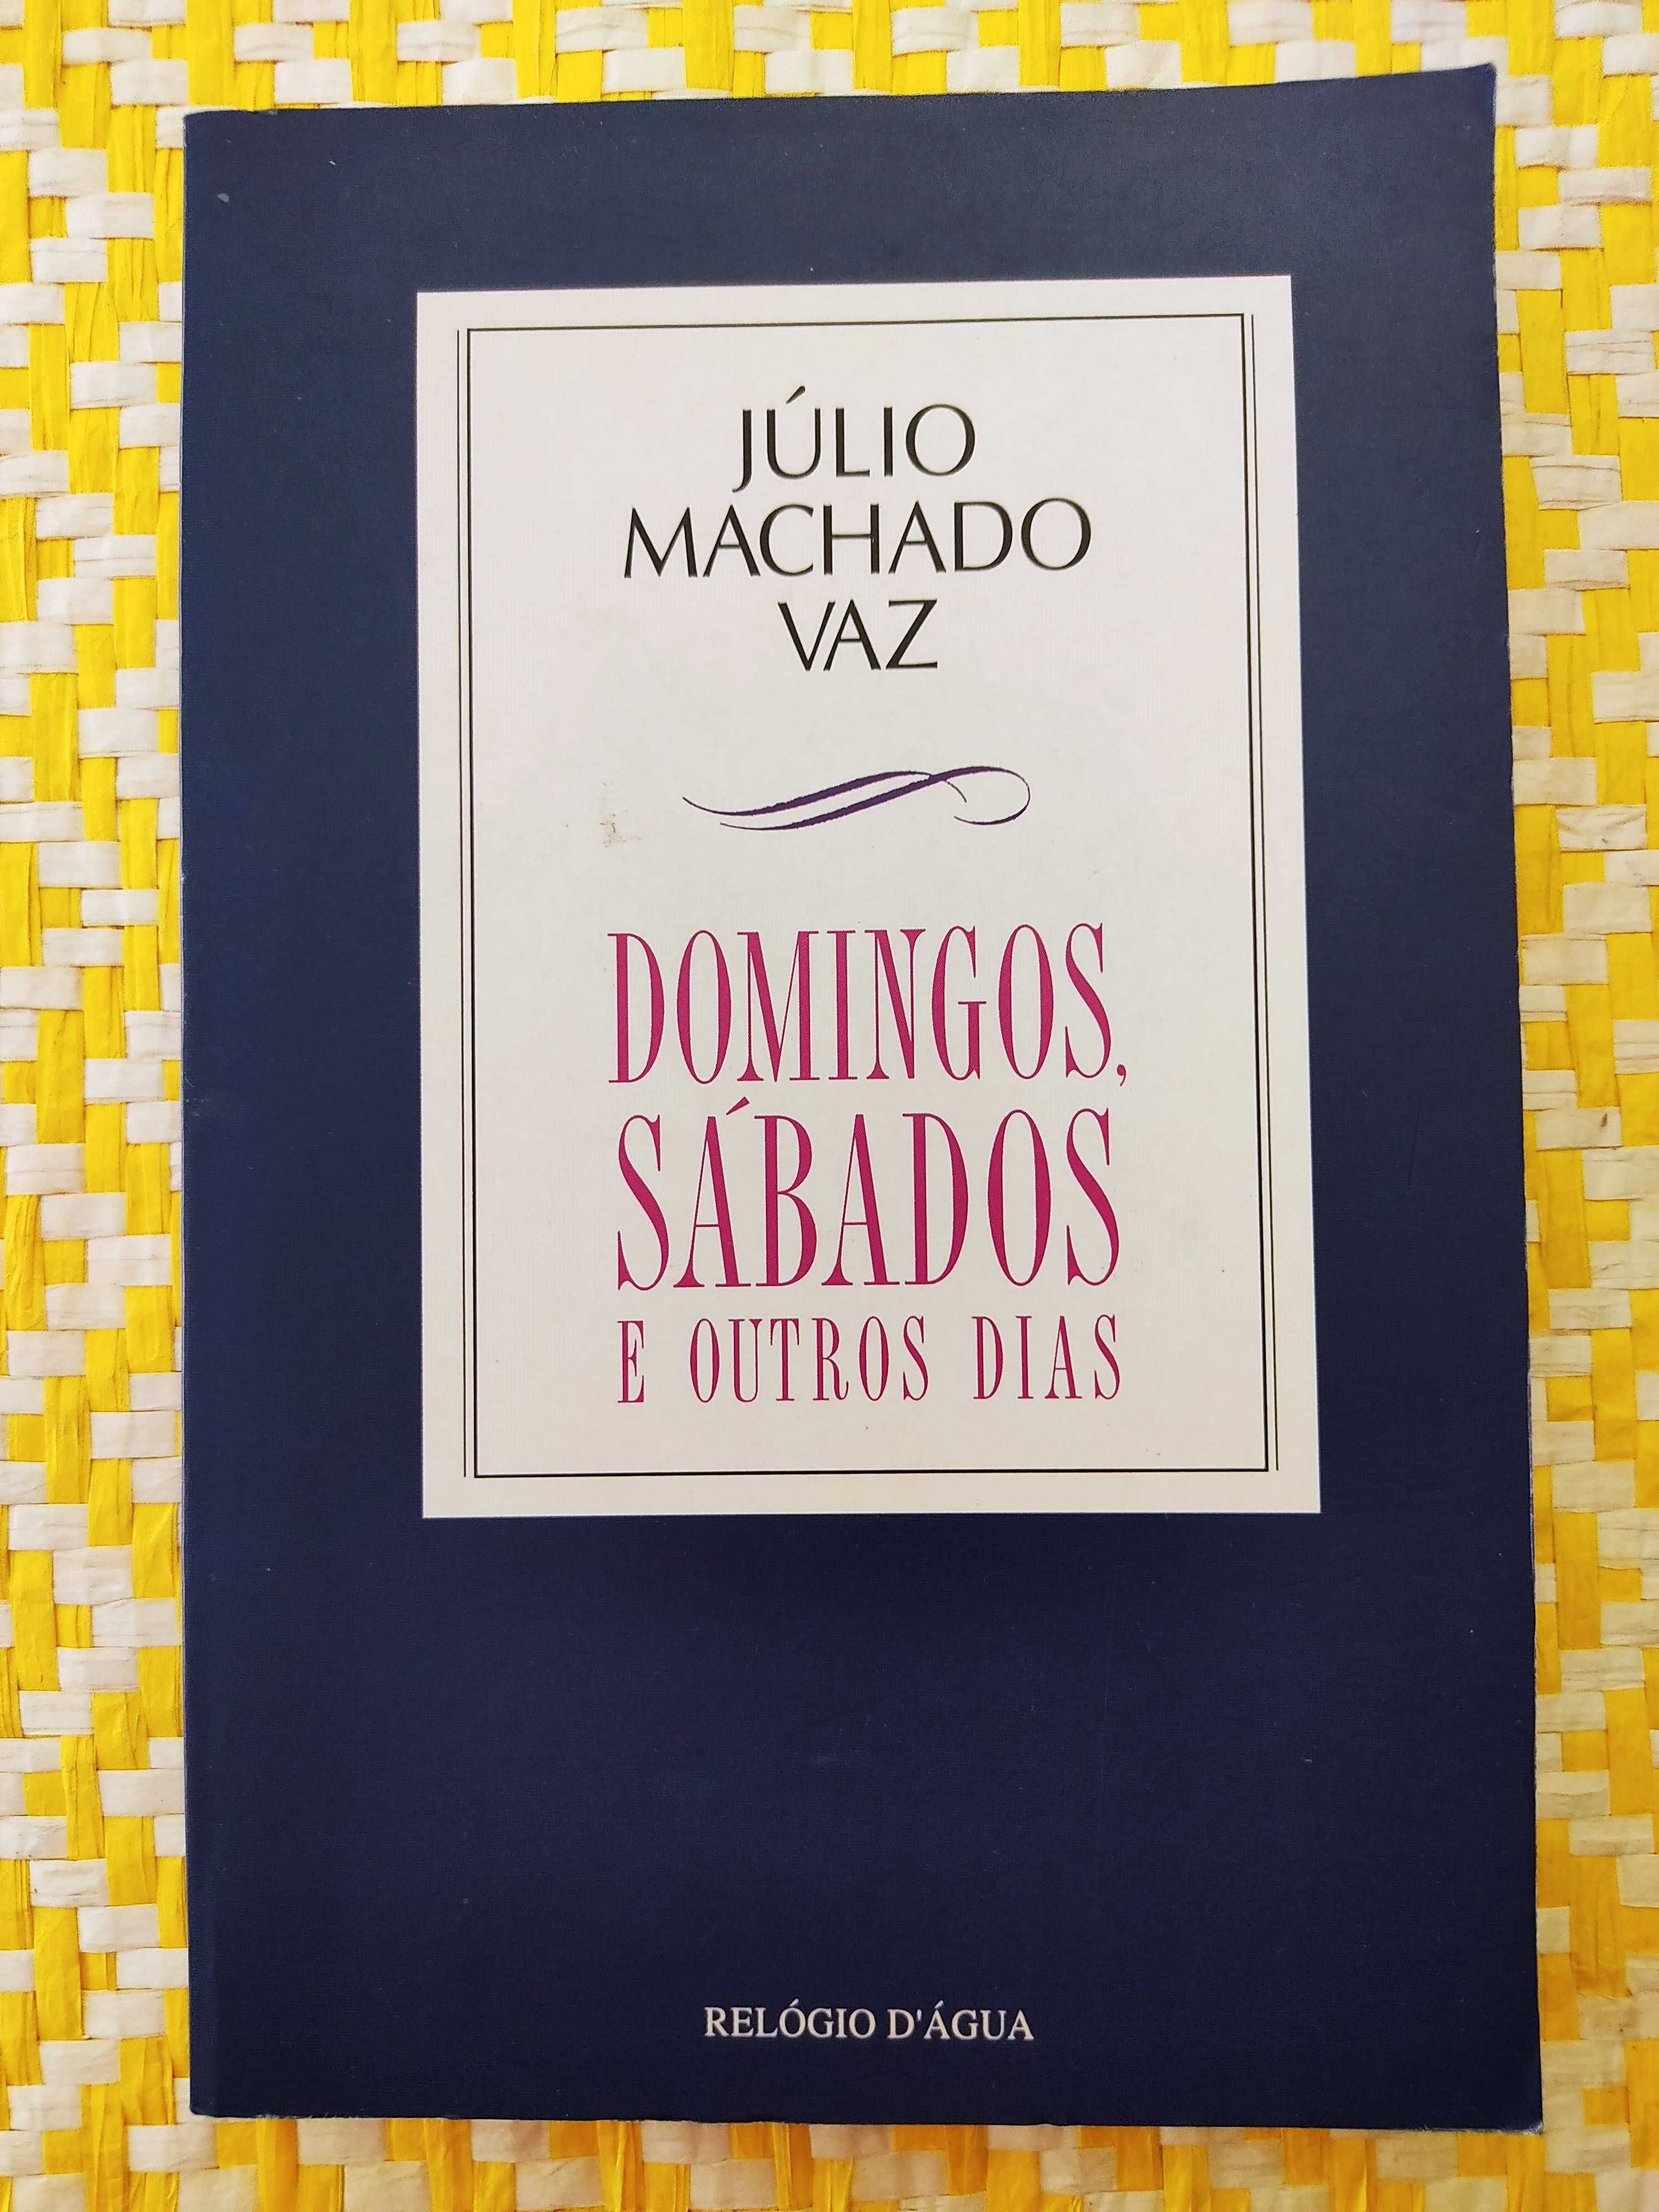 Domingos Sábados e outros dias - Júlio Machado Vaz